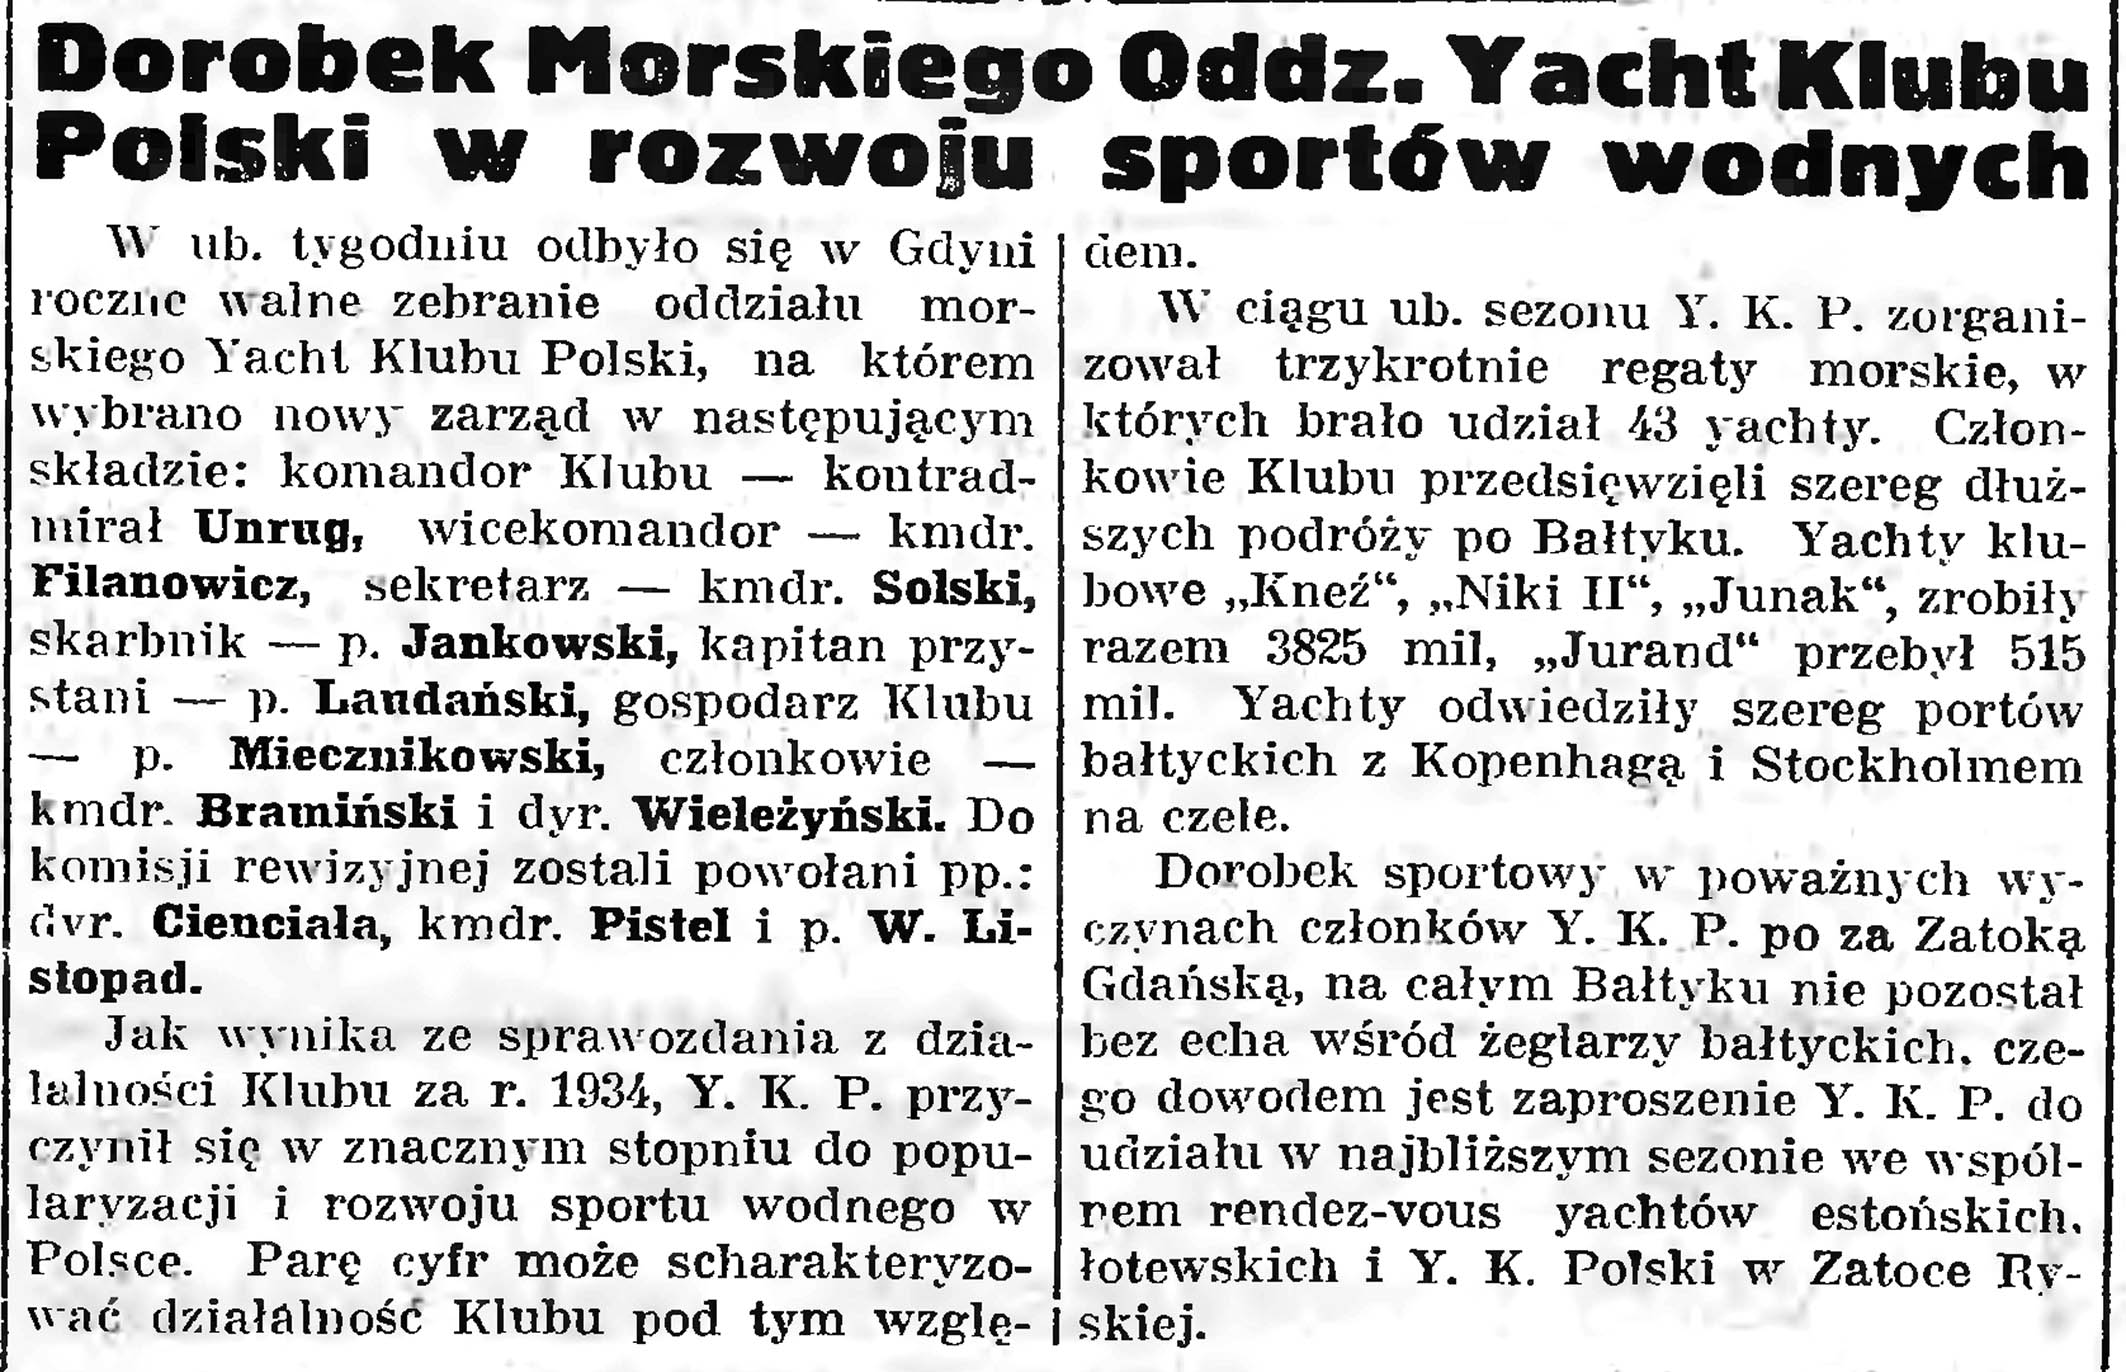 Dorobek Morskiego Oddz. Yacht Klubu Polski w rozwoju sportów wodnych // Gazeta Gdańska. - 1935, nr 47, s. 5